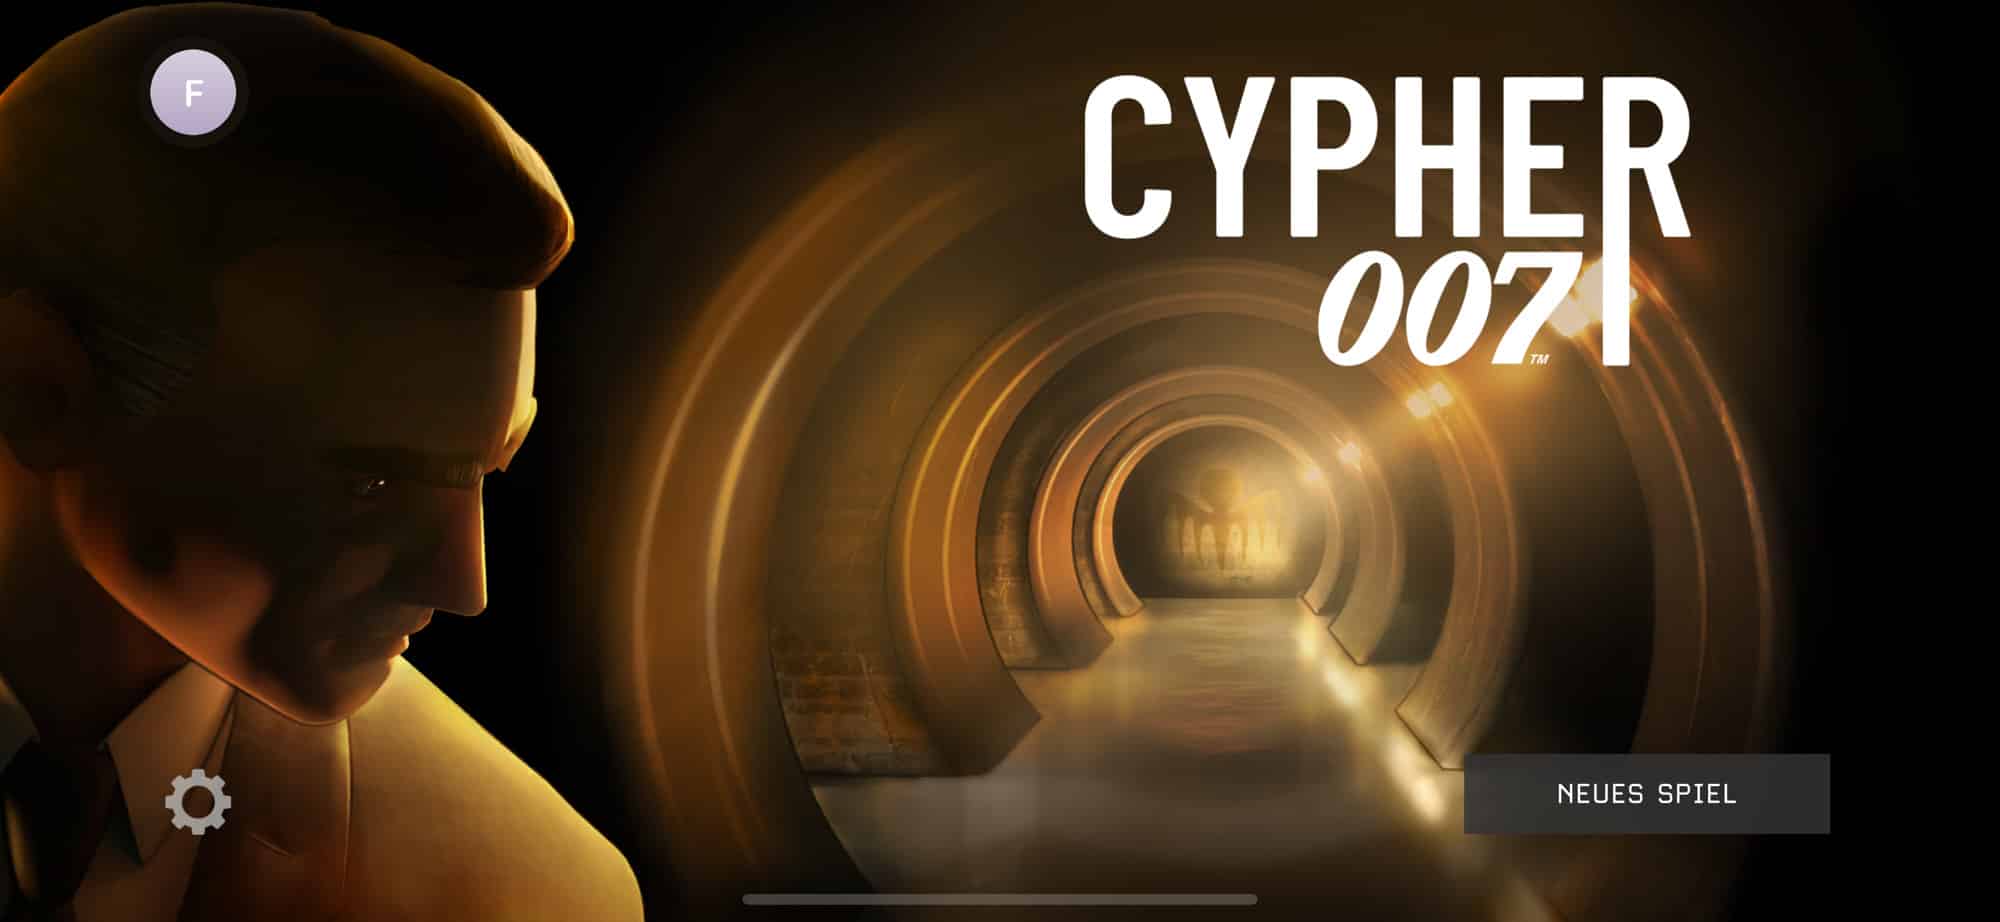 Cypher 007 Banner für das neue iOS Spiel